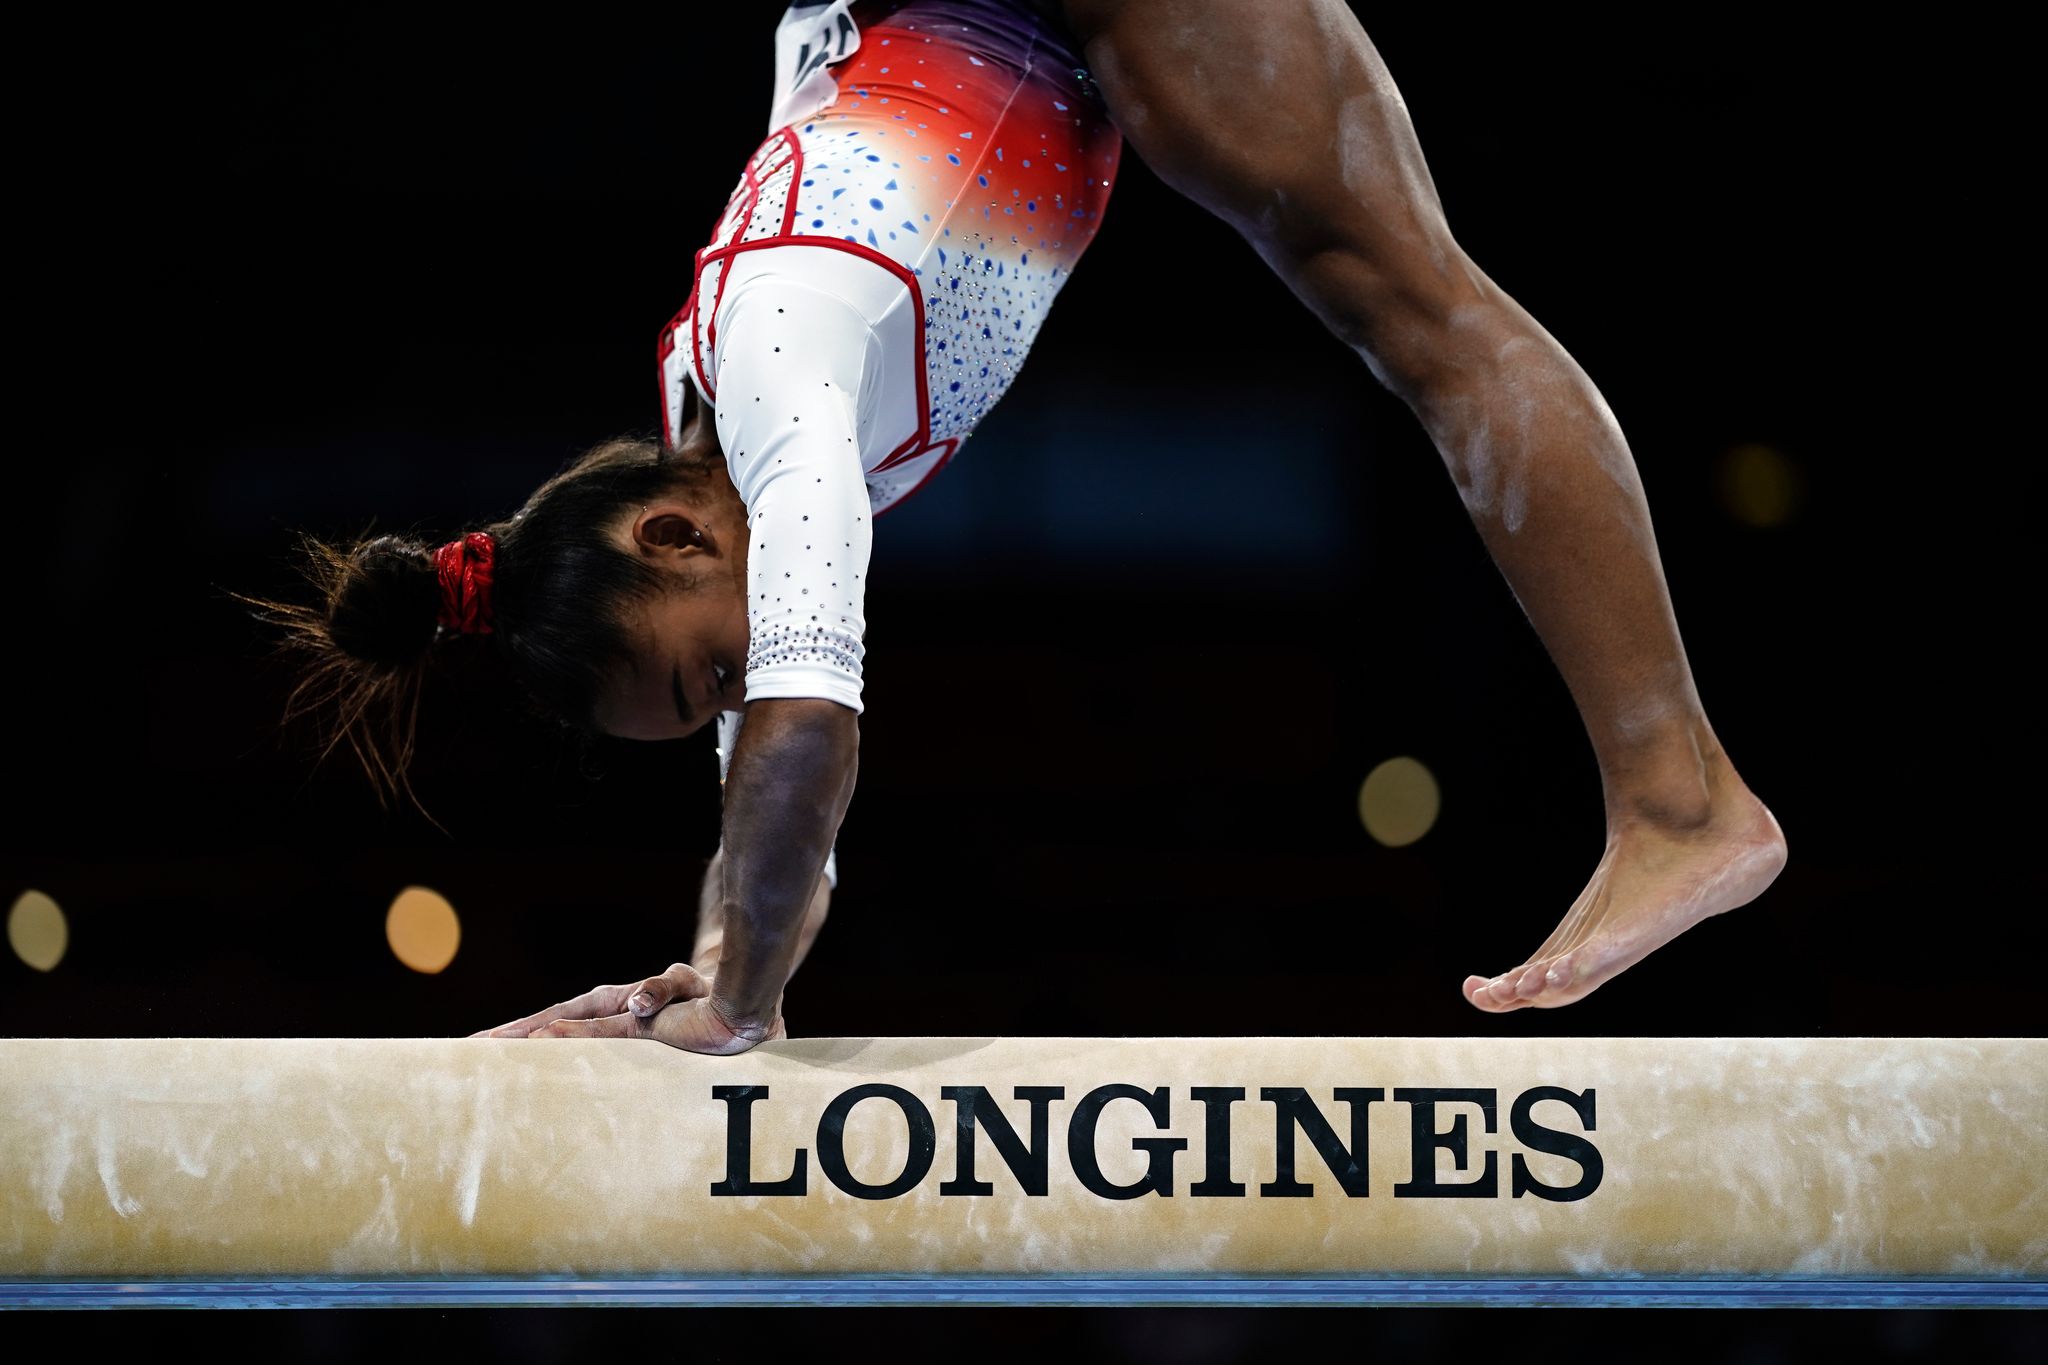 Gymnastique : Le concours des barres asymétriques - JO Tokyo 2020